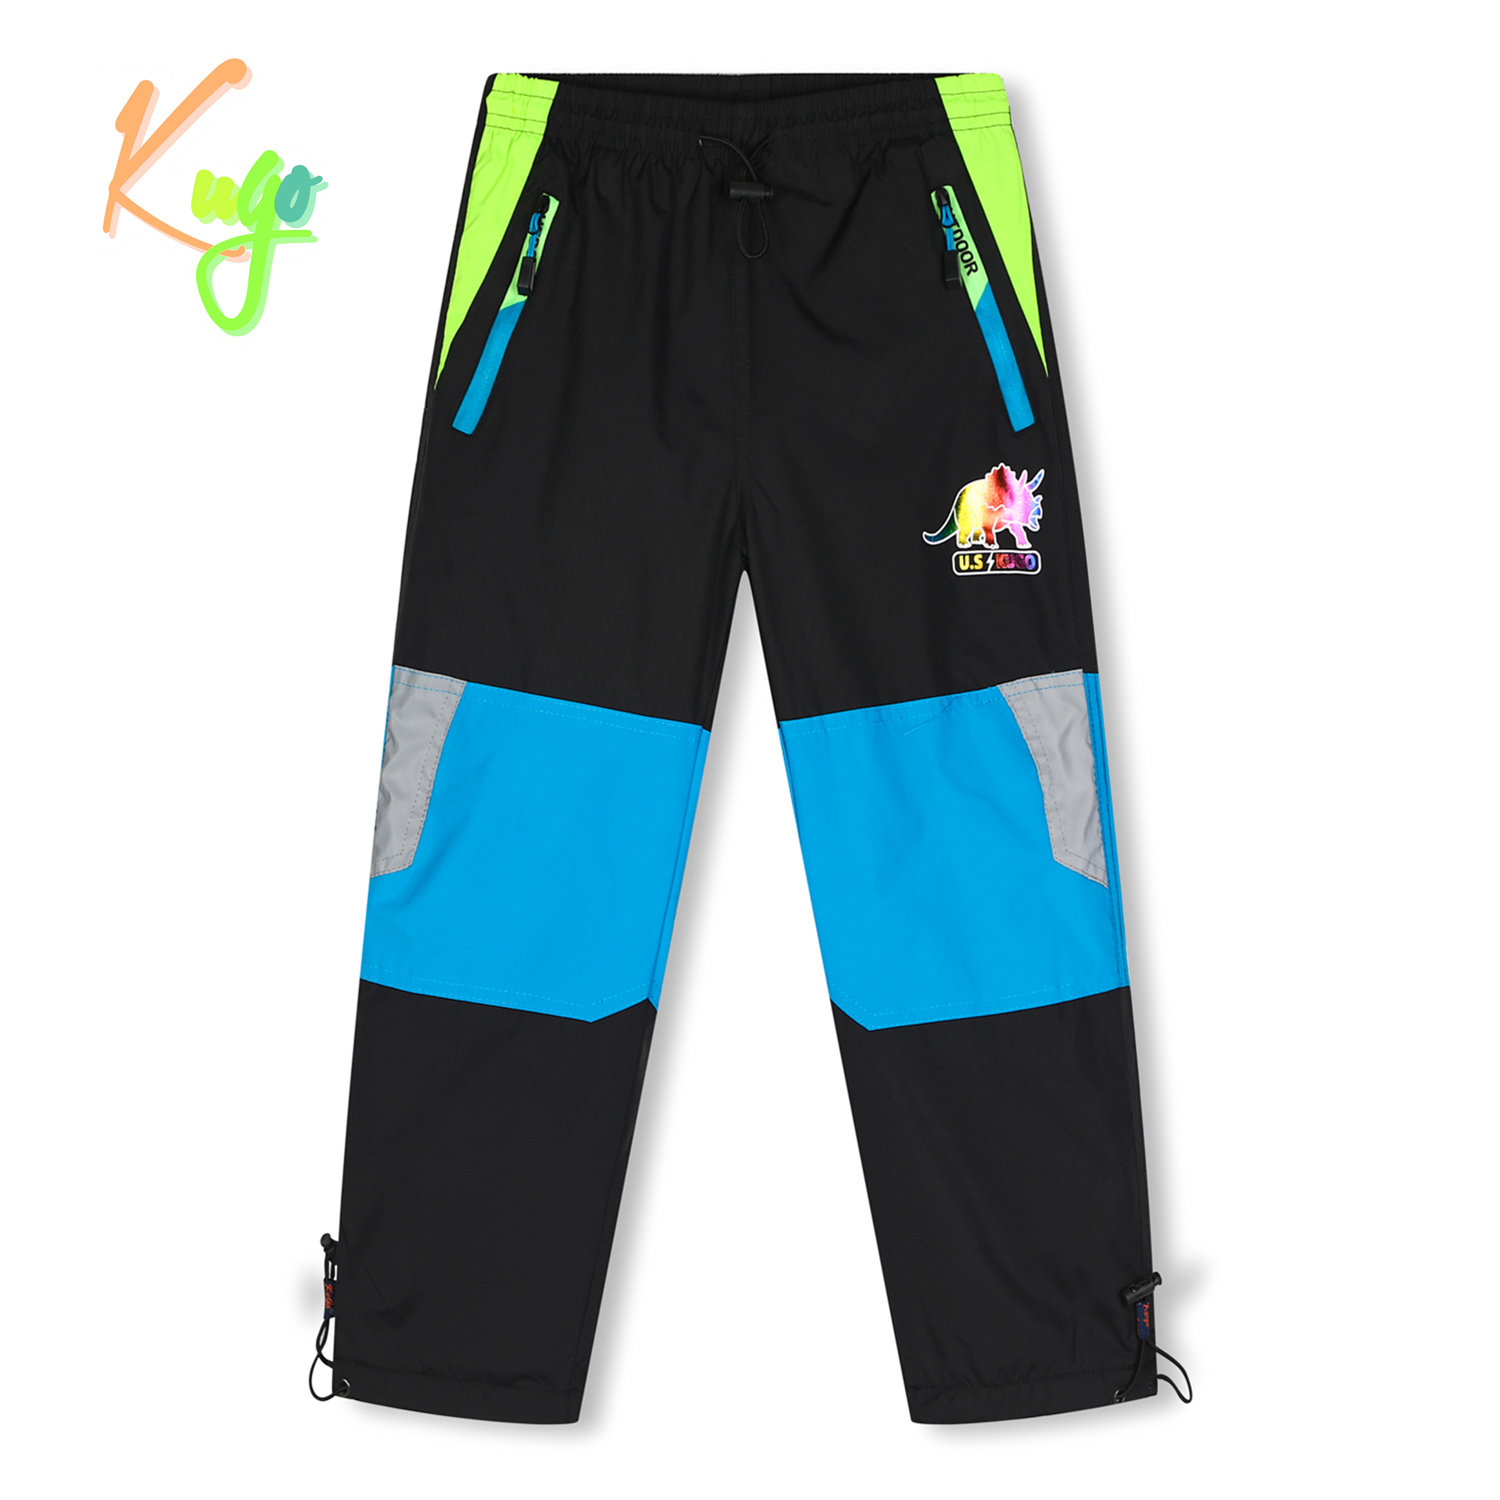 Chlapecké šusťákové kalhoty, zateplené - KUGO DK7128, černá Barva: Černá, Velikost: 98